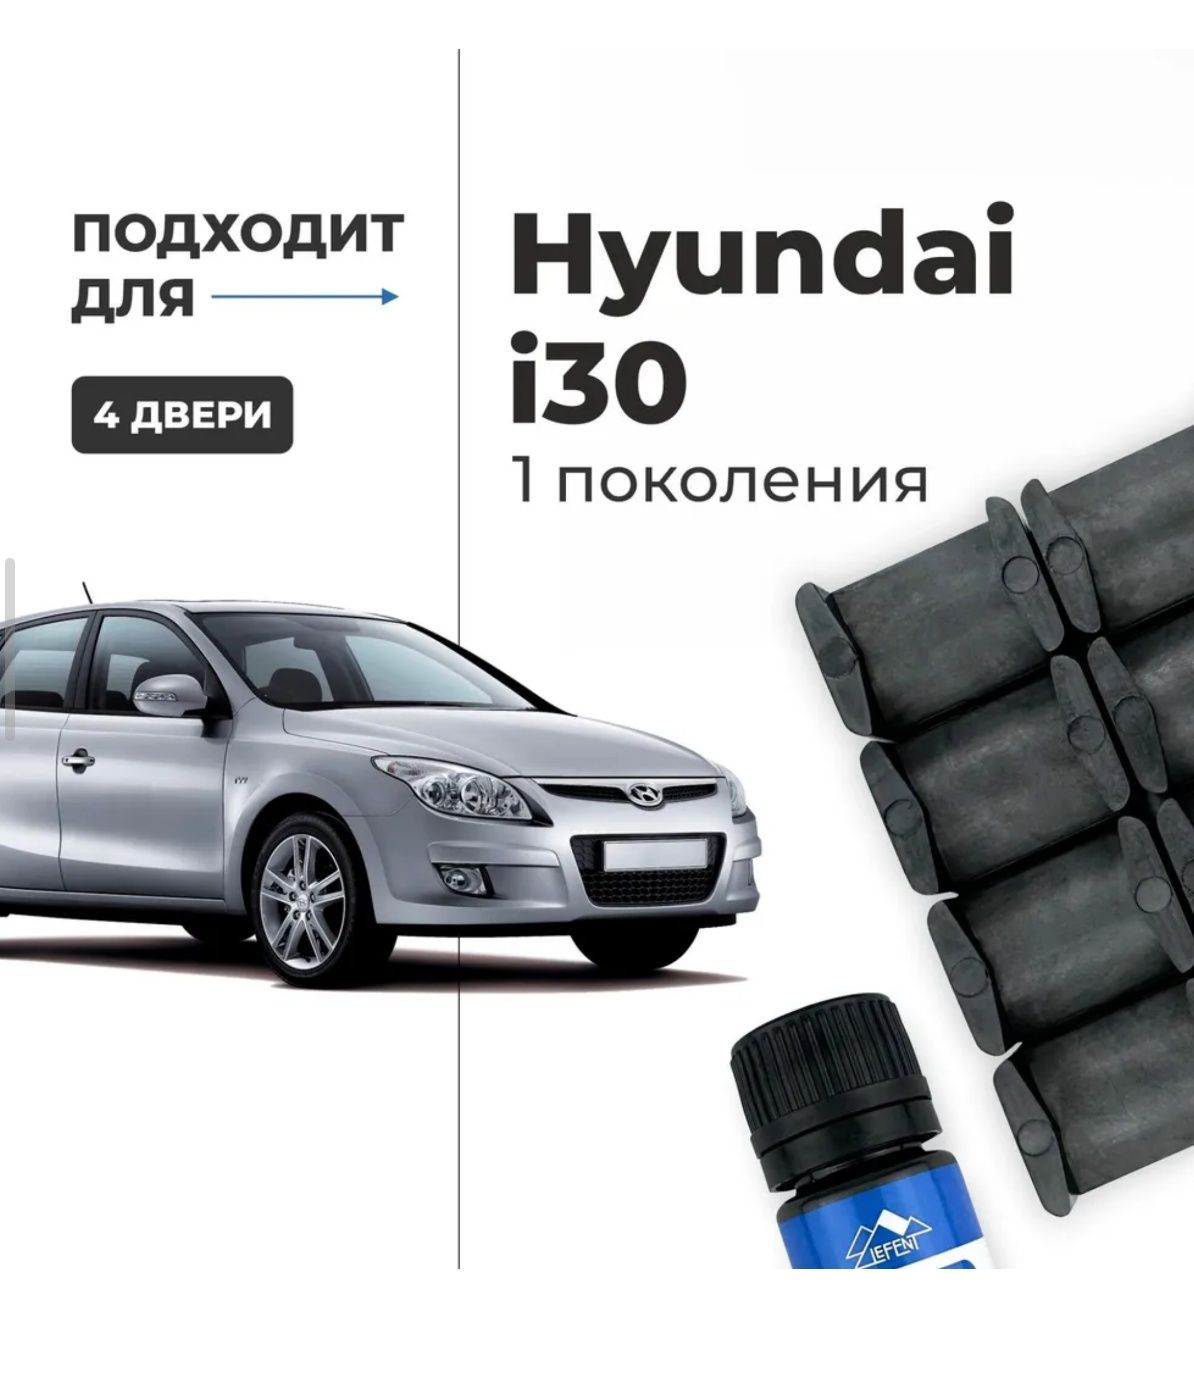 Ремкомплект фиксации дверей Hyundai i30 07-12